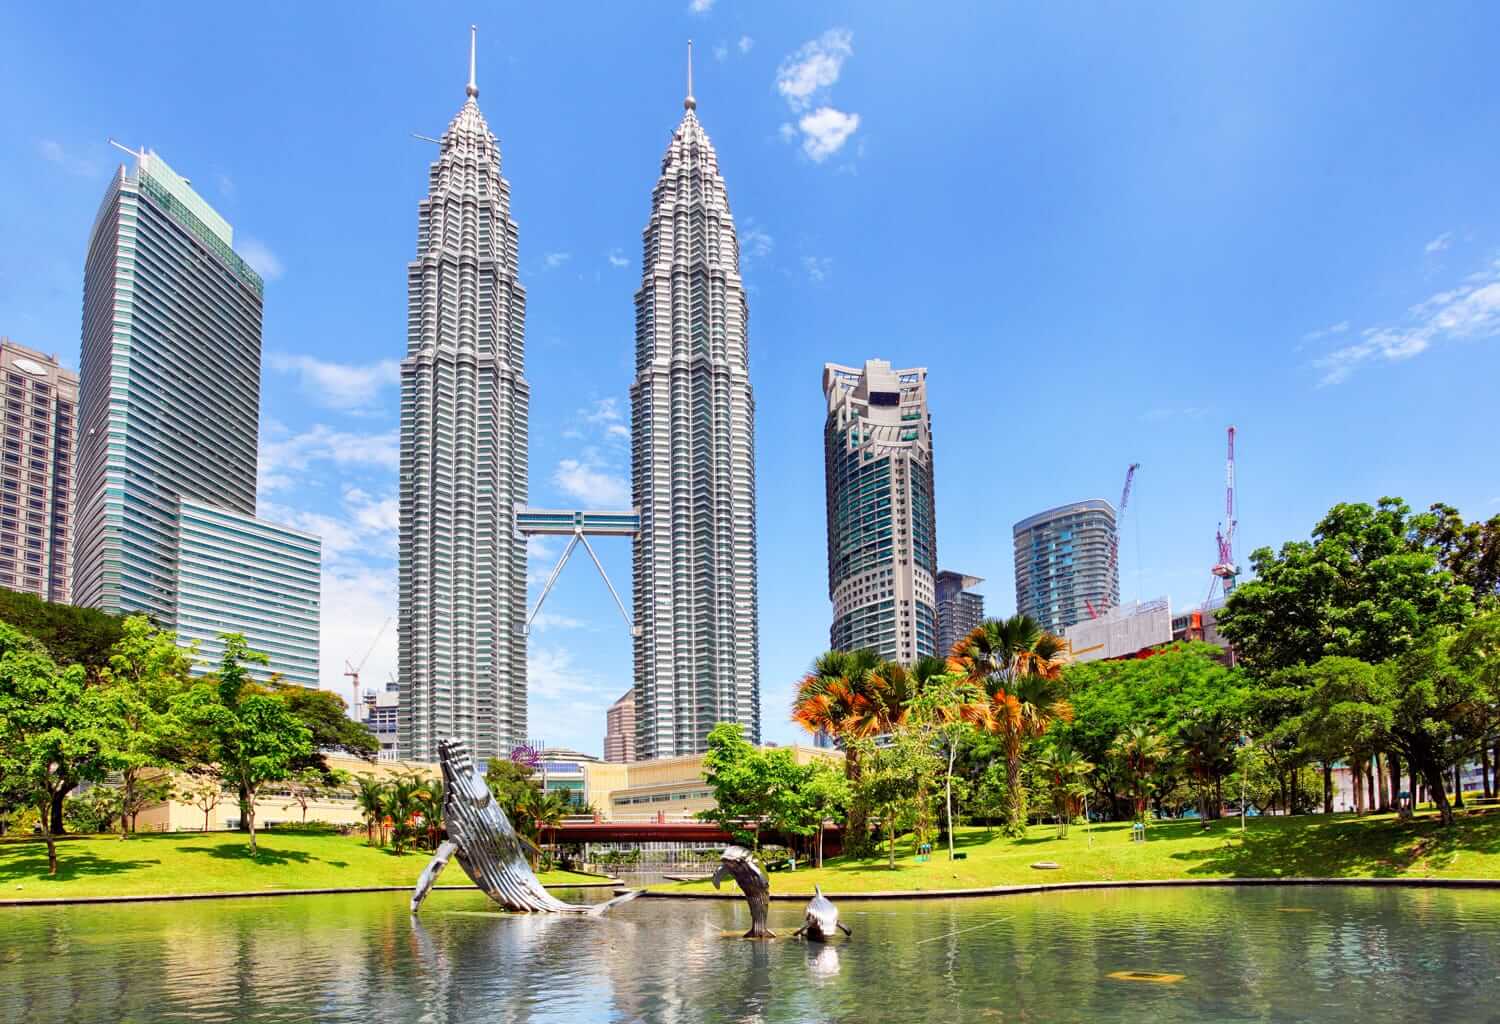 Kuala Lumpur, Malaysia Travel Guide - eLaine Asia